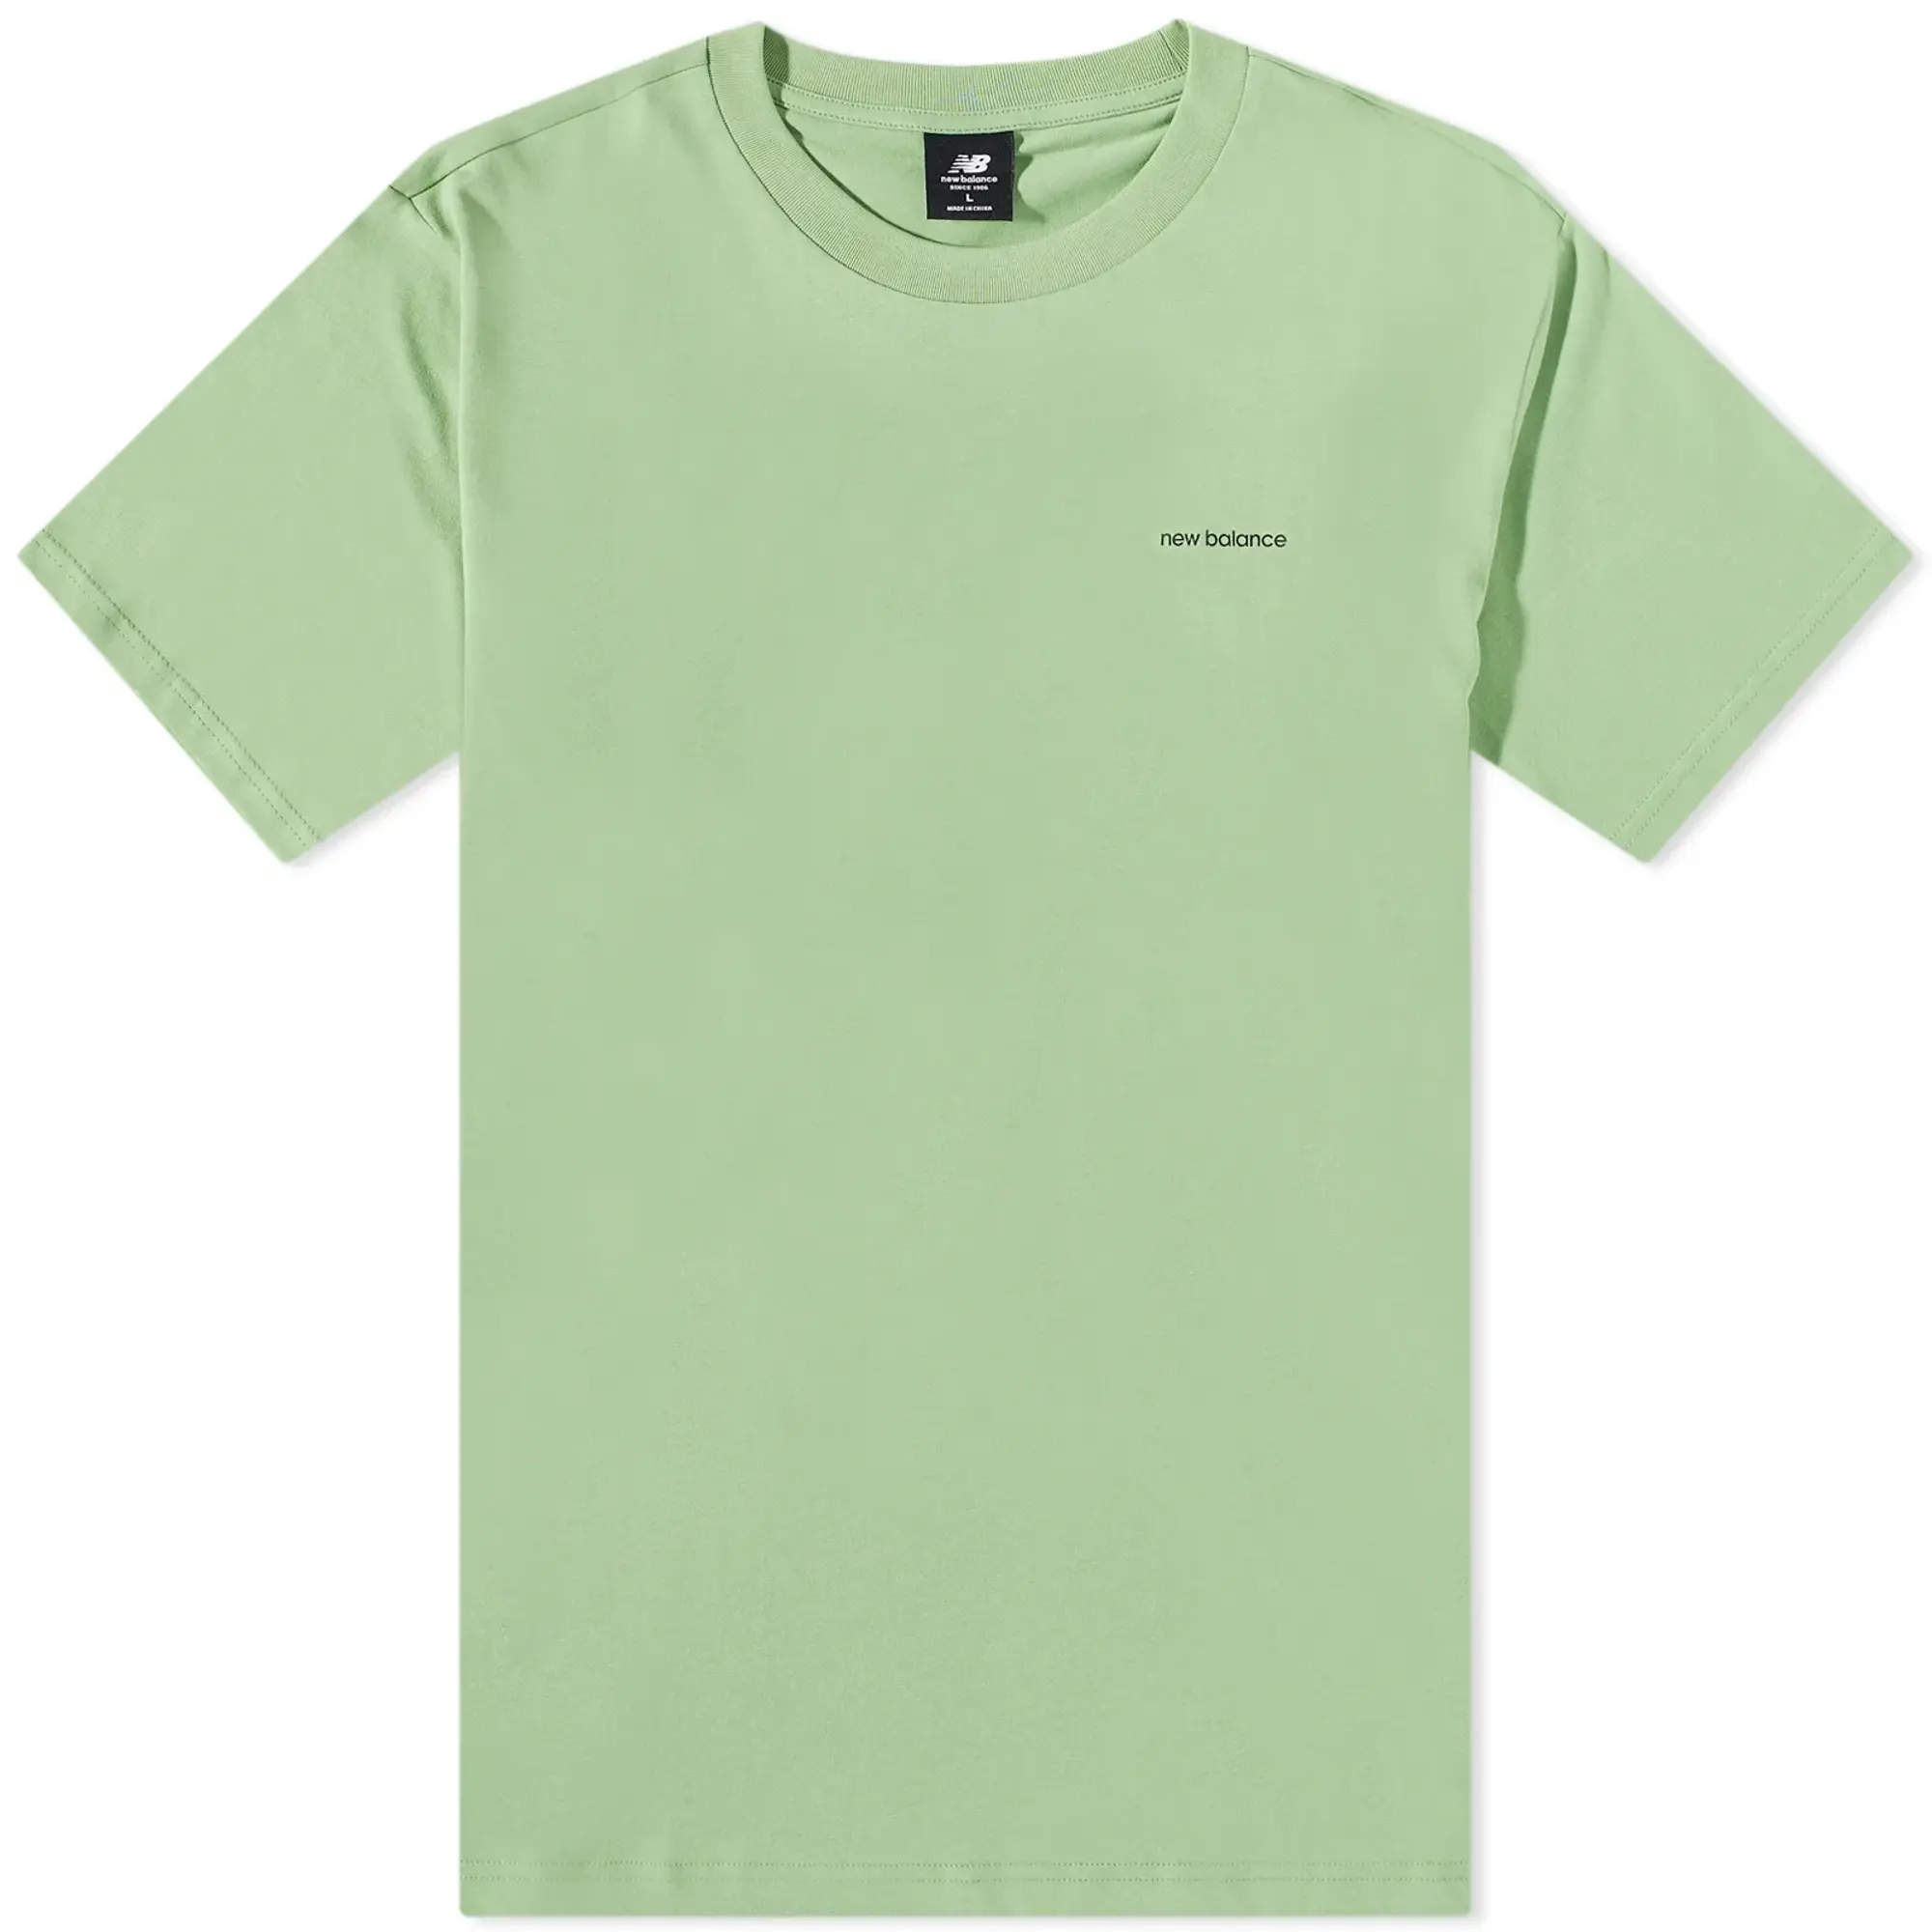 New Balance Essentials Cafe at T-Shirt 1 - Green